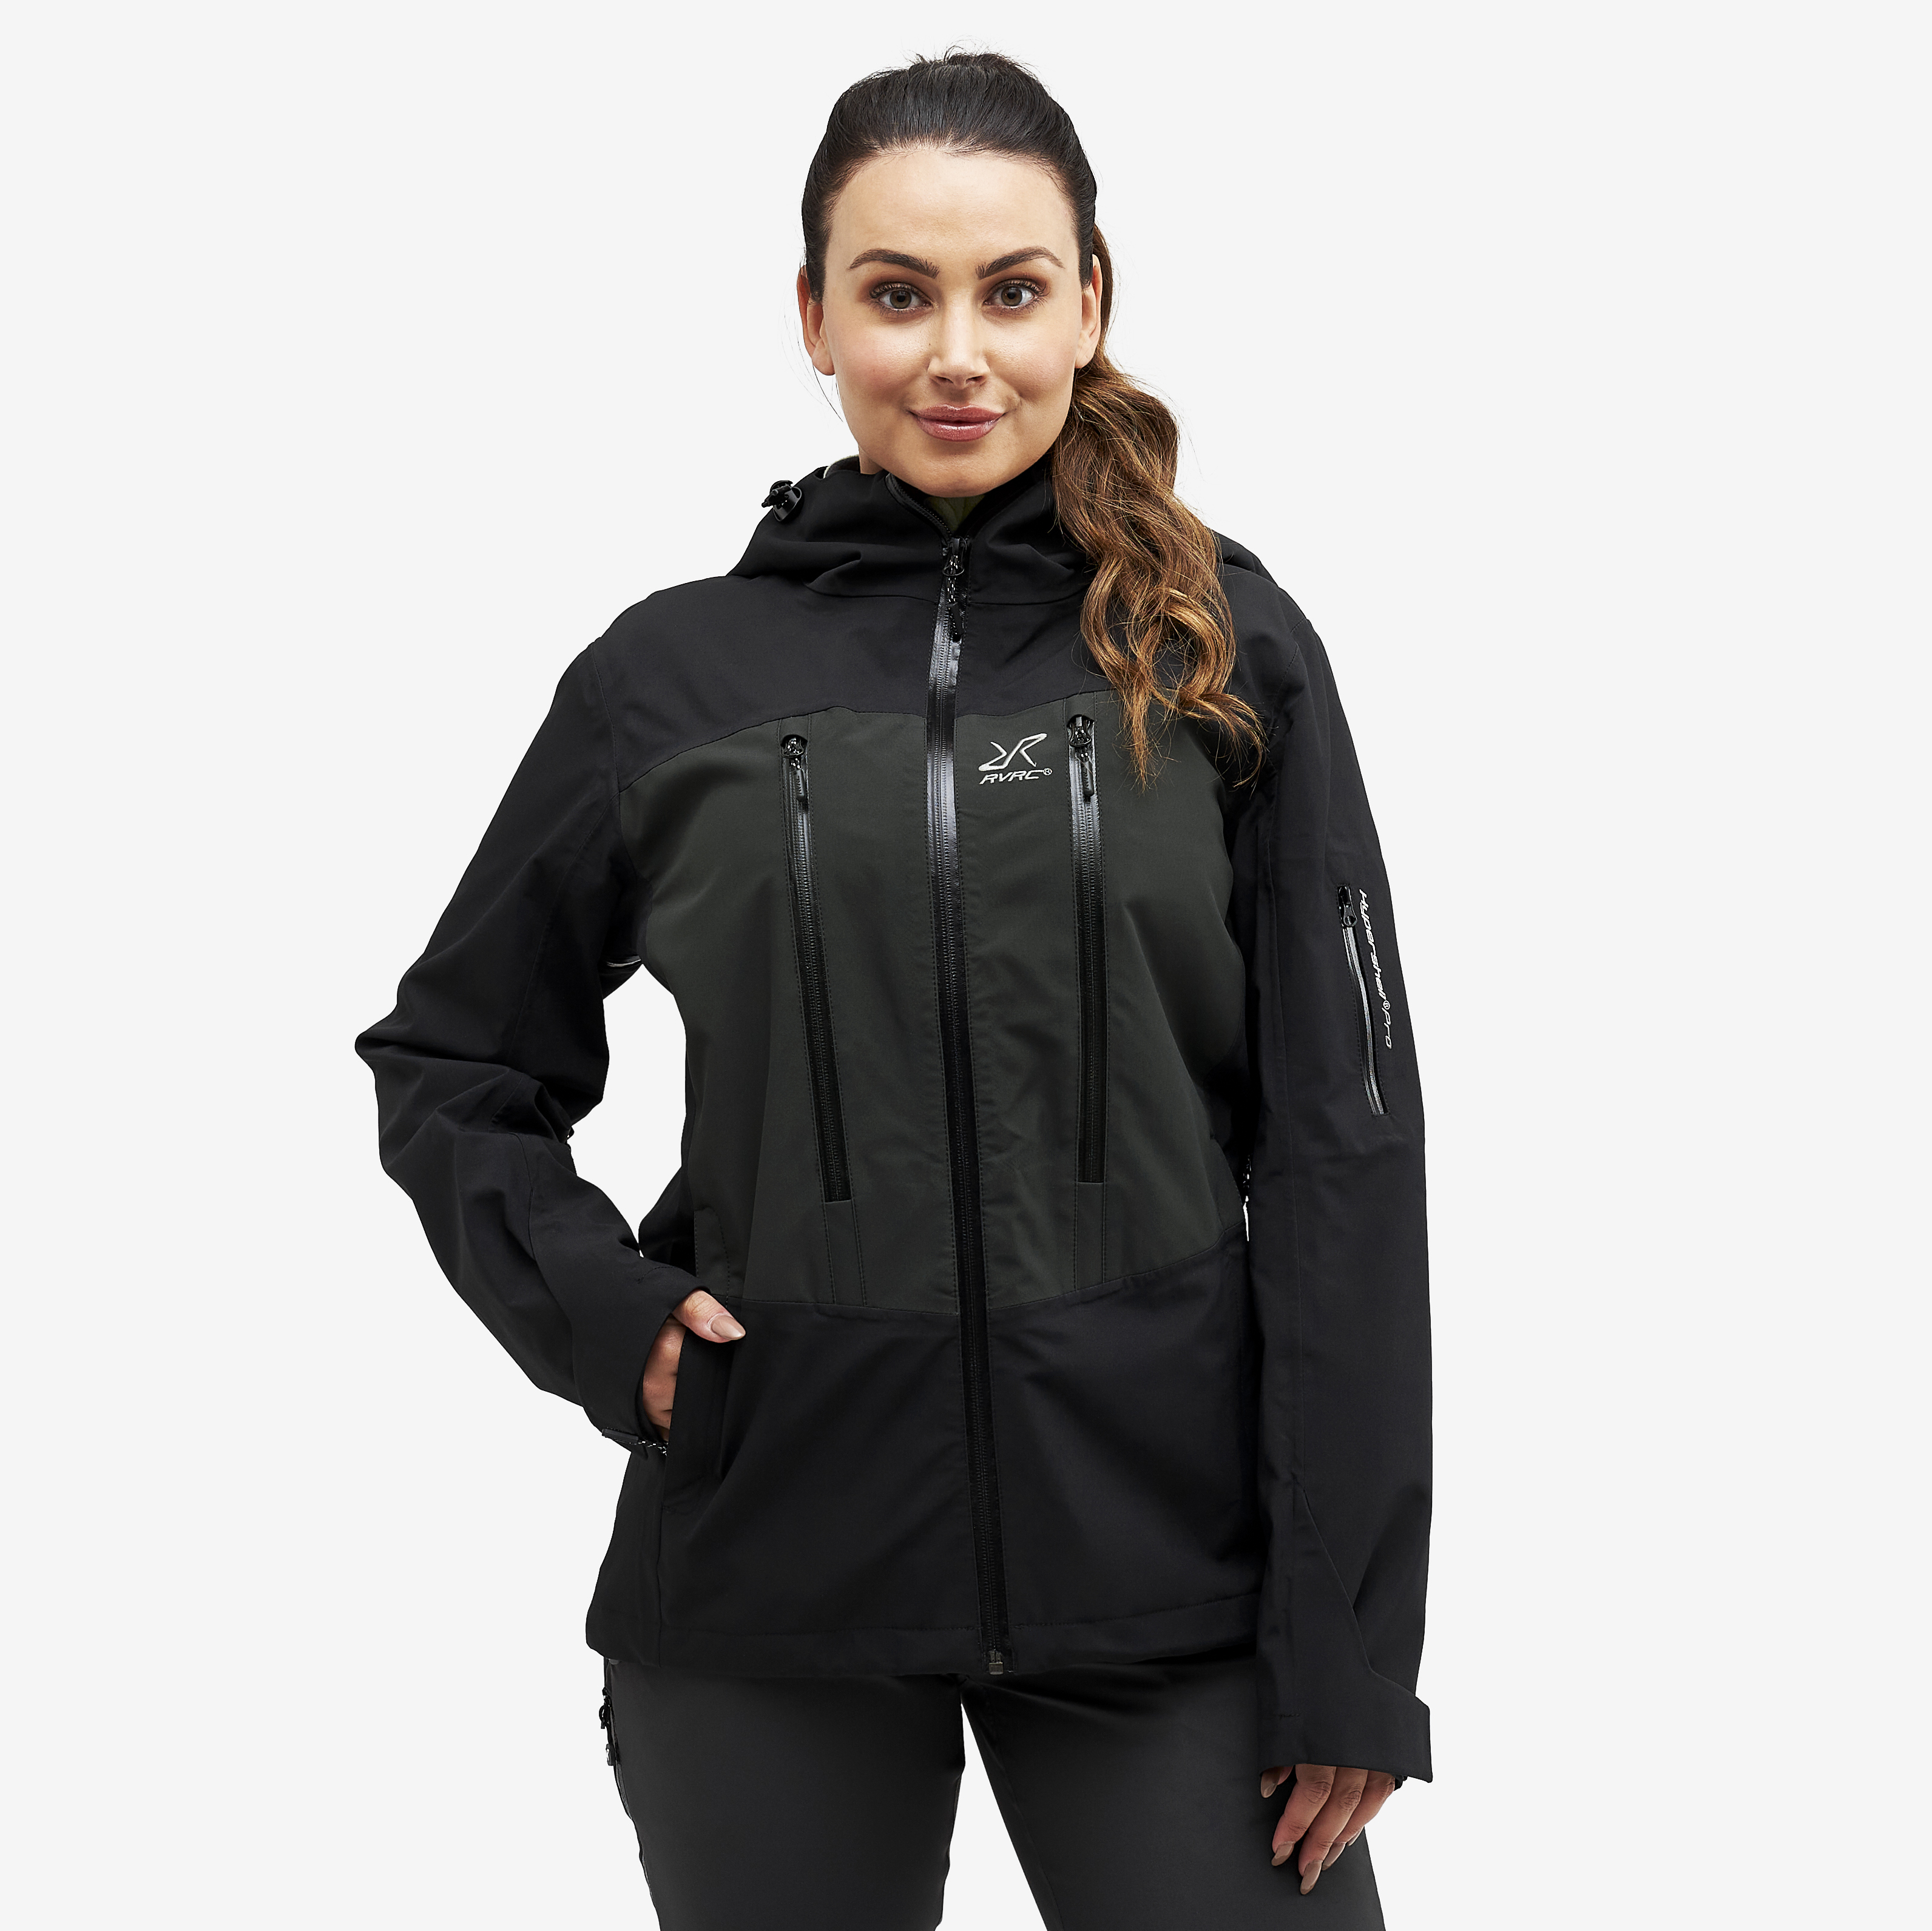 Whisper waterproof jacket for women in black